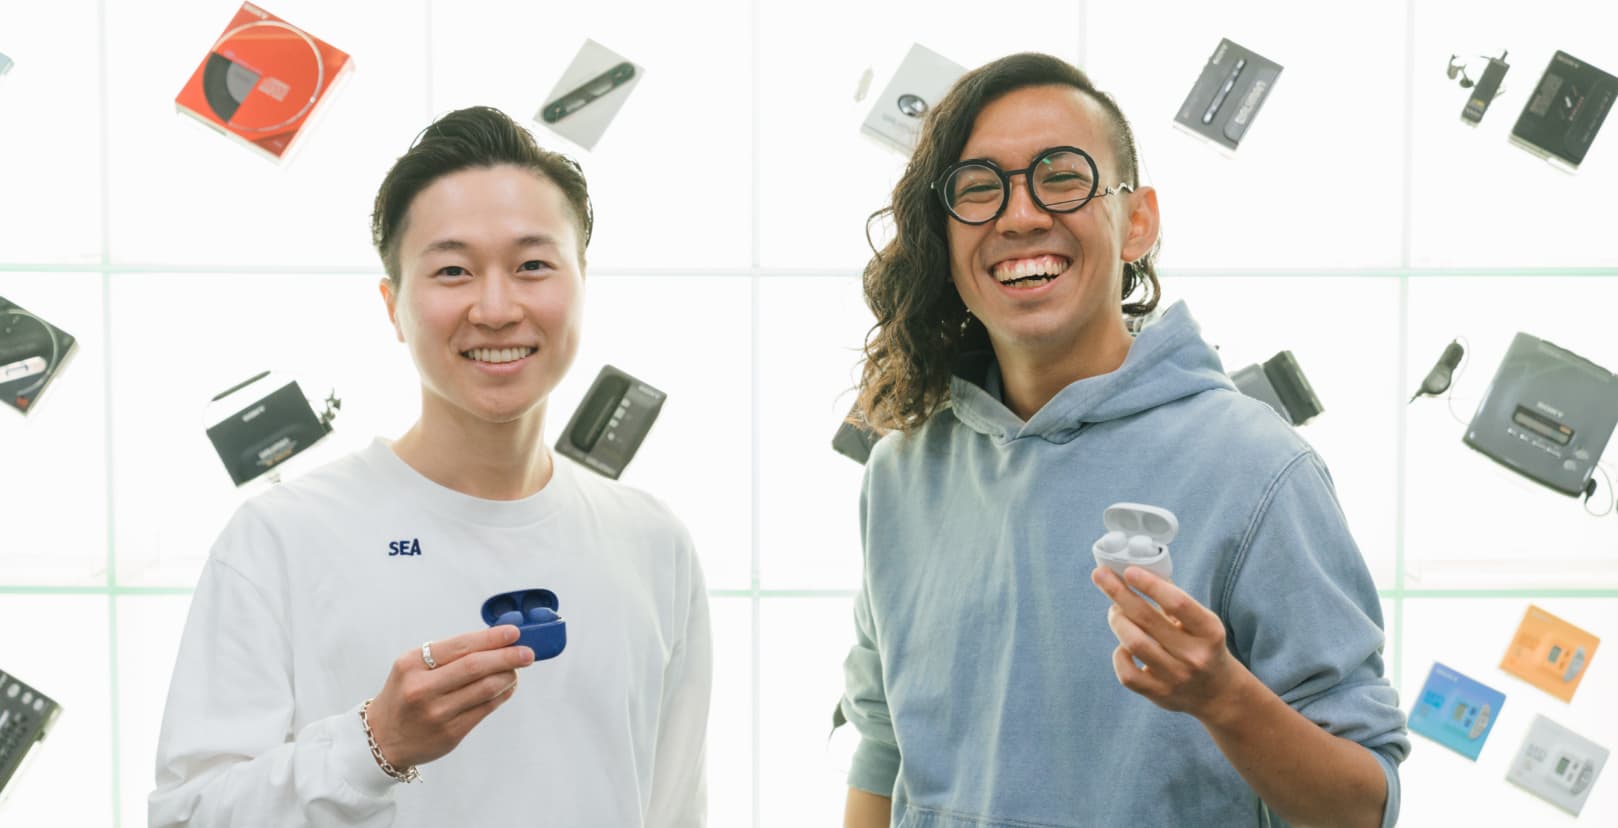 本坊健一郎さんと加藤功将さんがそれぞれLink Buds Sを持って正面を向いて笑っている写真。